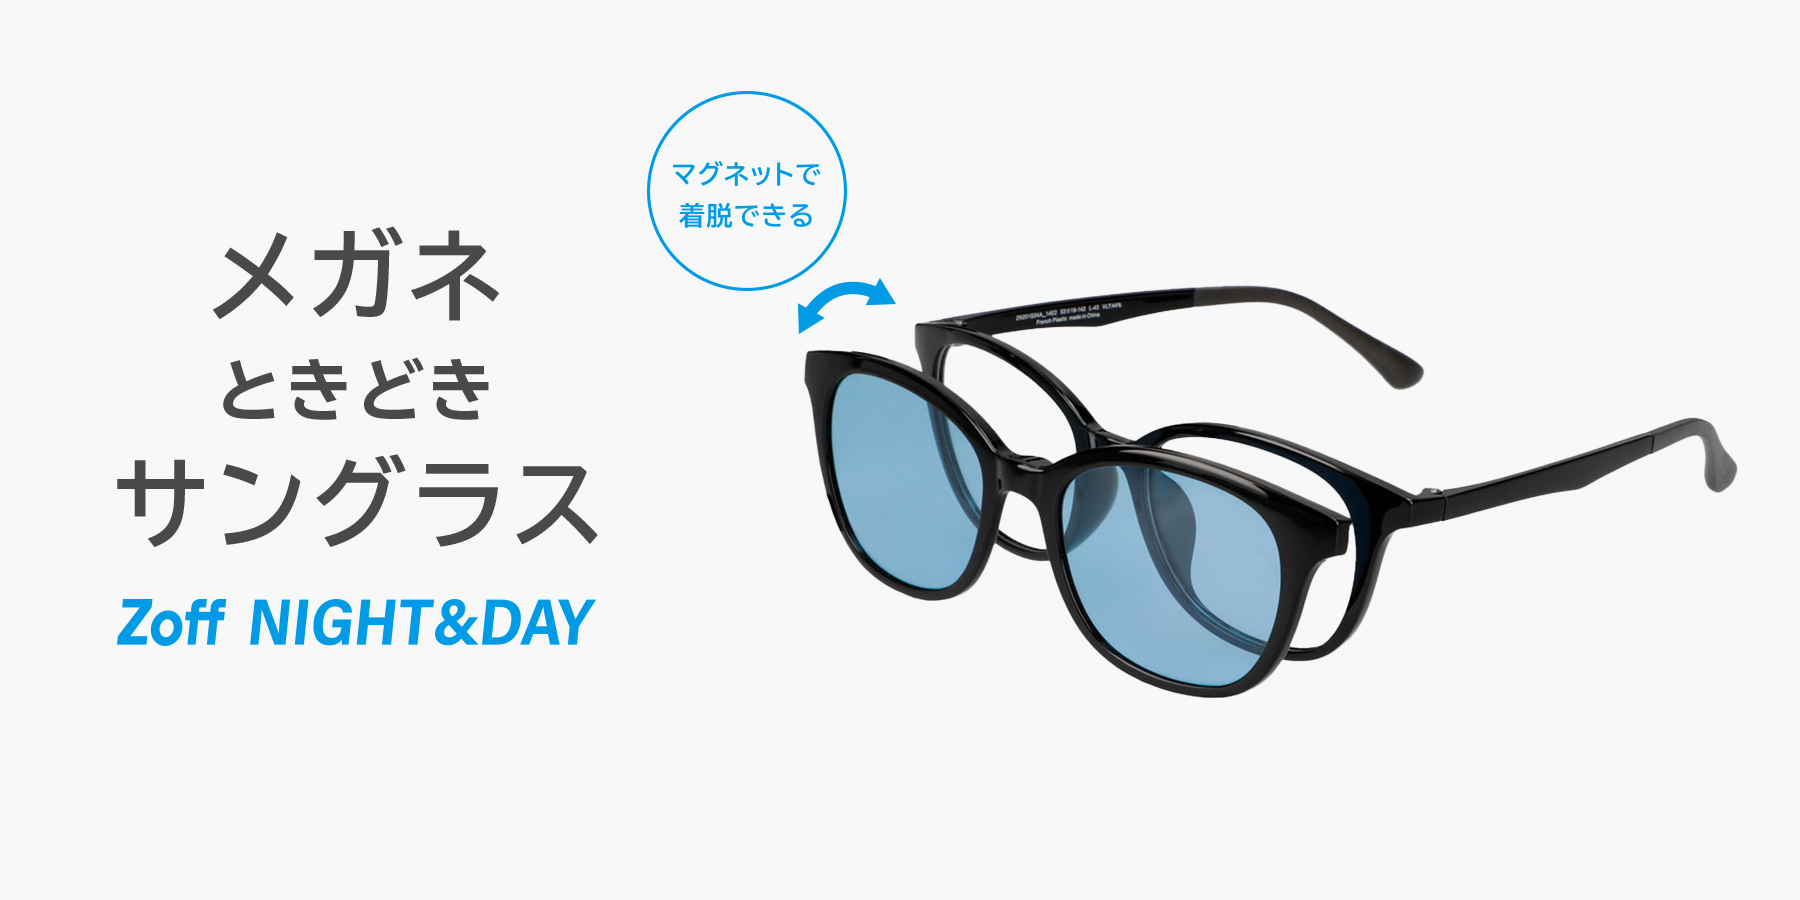 【Zoff】メガネときどきサングラス「Zoff NIGHT&DAY」に新作登場！  普段はメガネ、お出かけやドライブでは偏光機能付きのサングラスに。